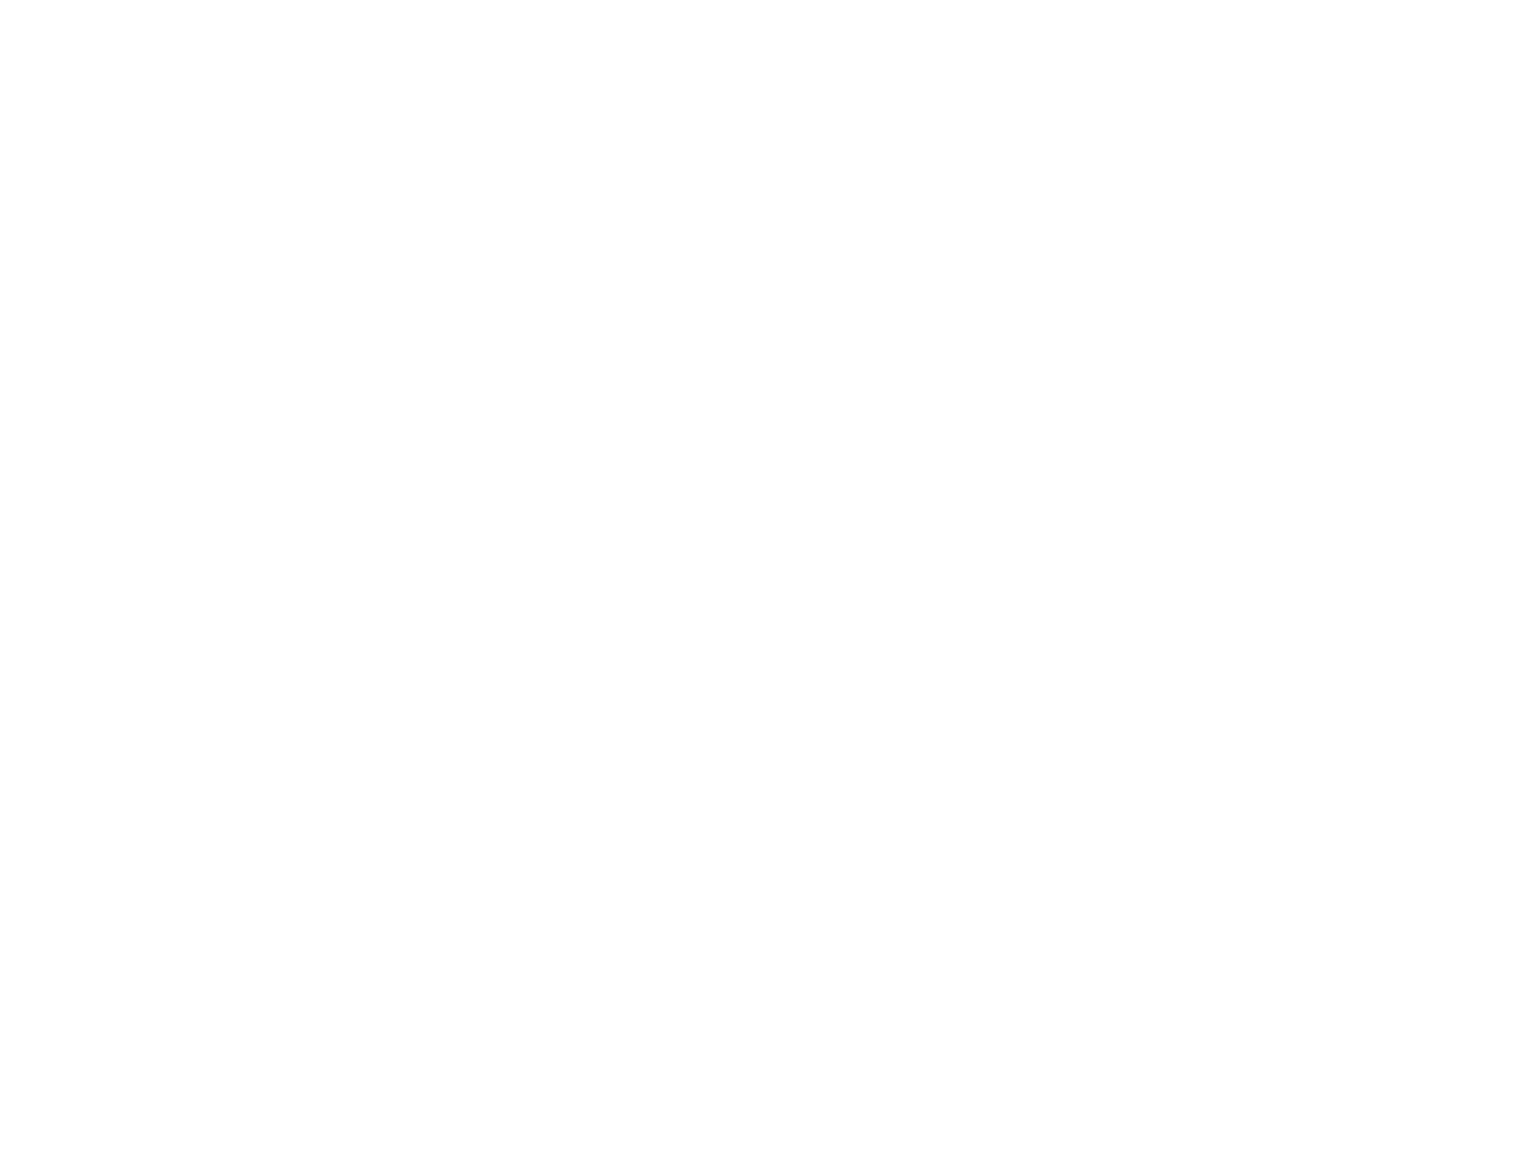 Andritz logo pour fonds sombres (PNG transparent)